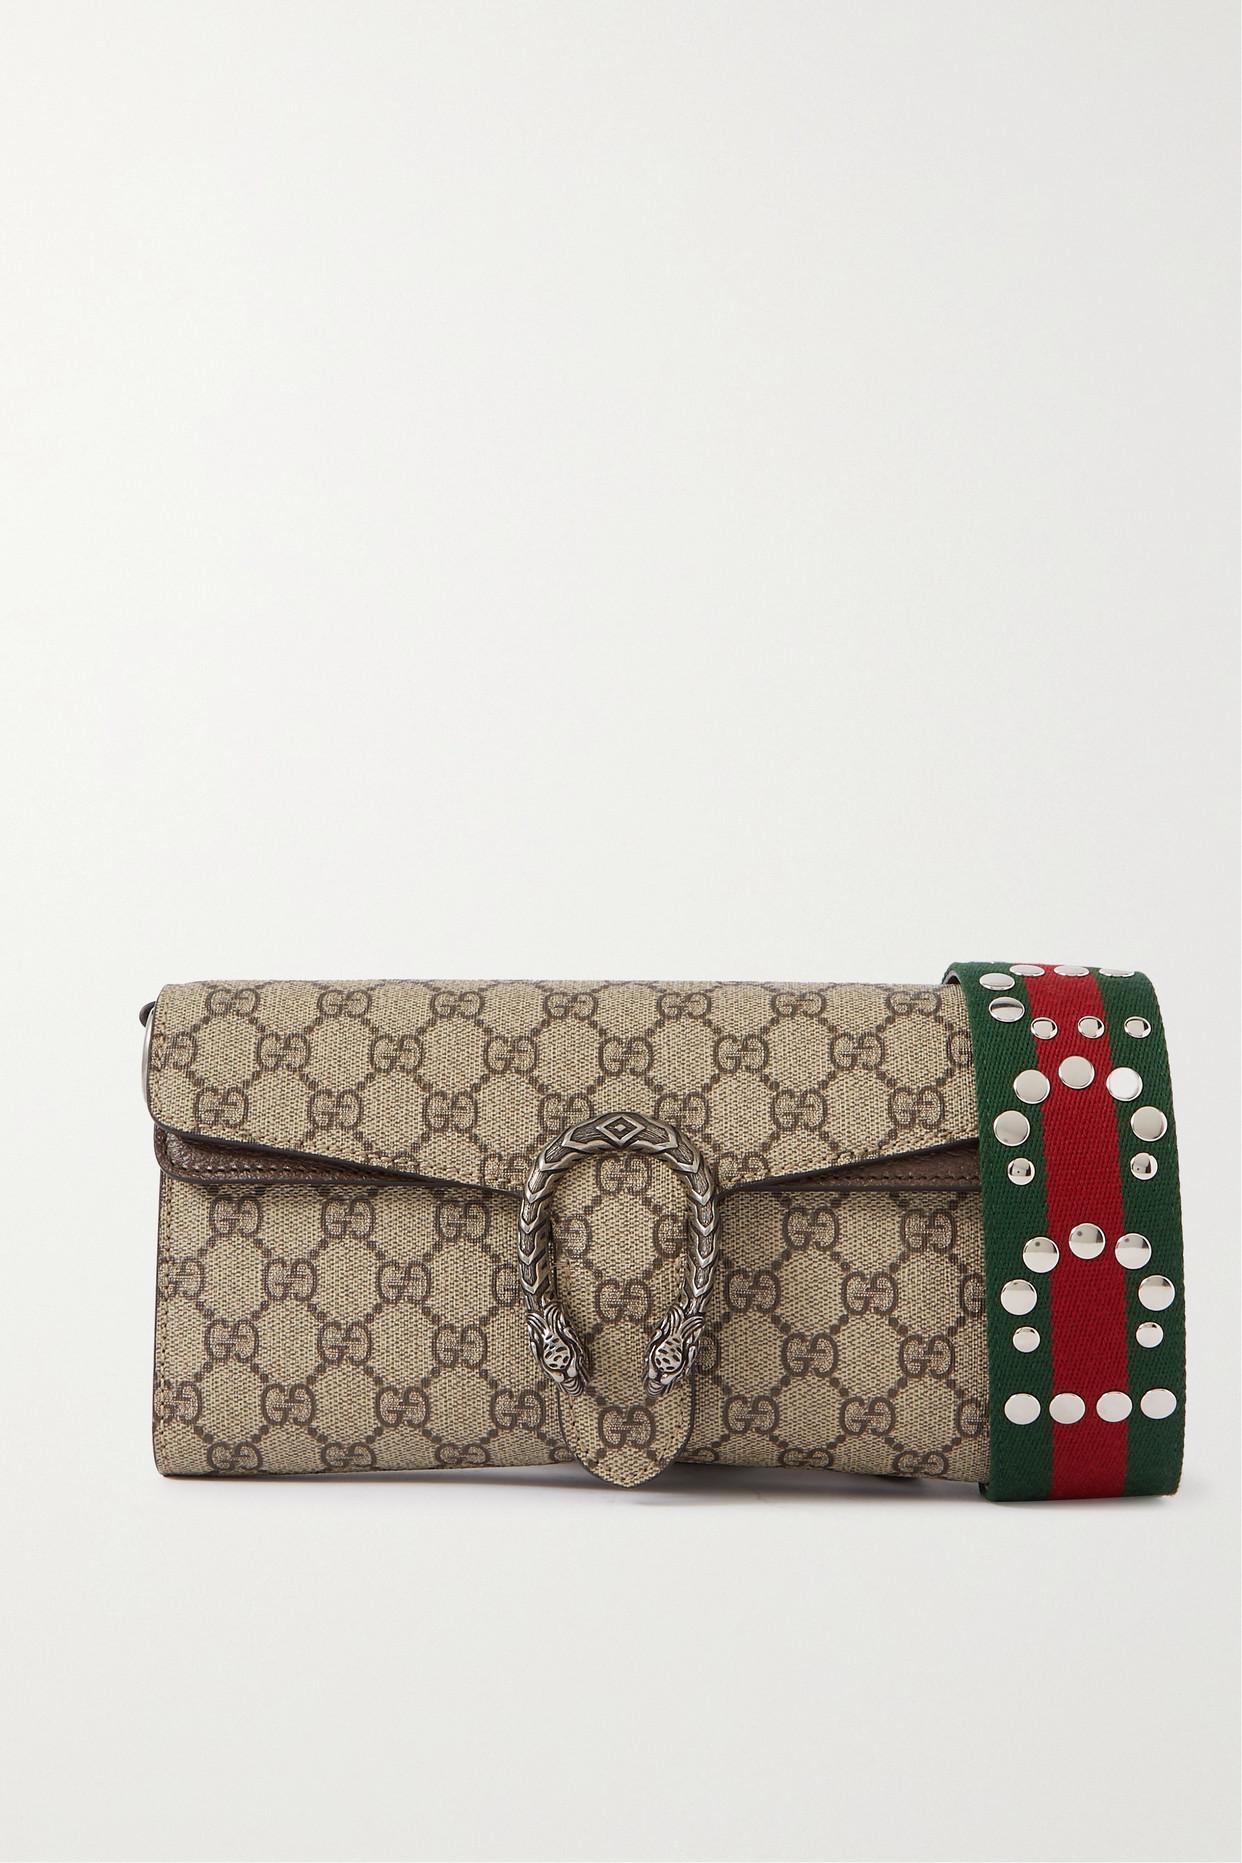 Gucci Dionysus Embellished Leather-trimmed Printed Coated-canvas Shoulder  Bag in Natural